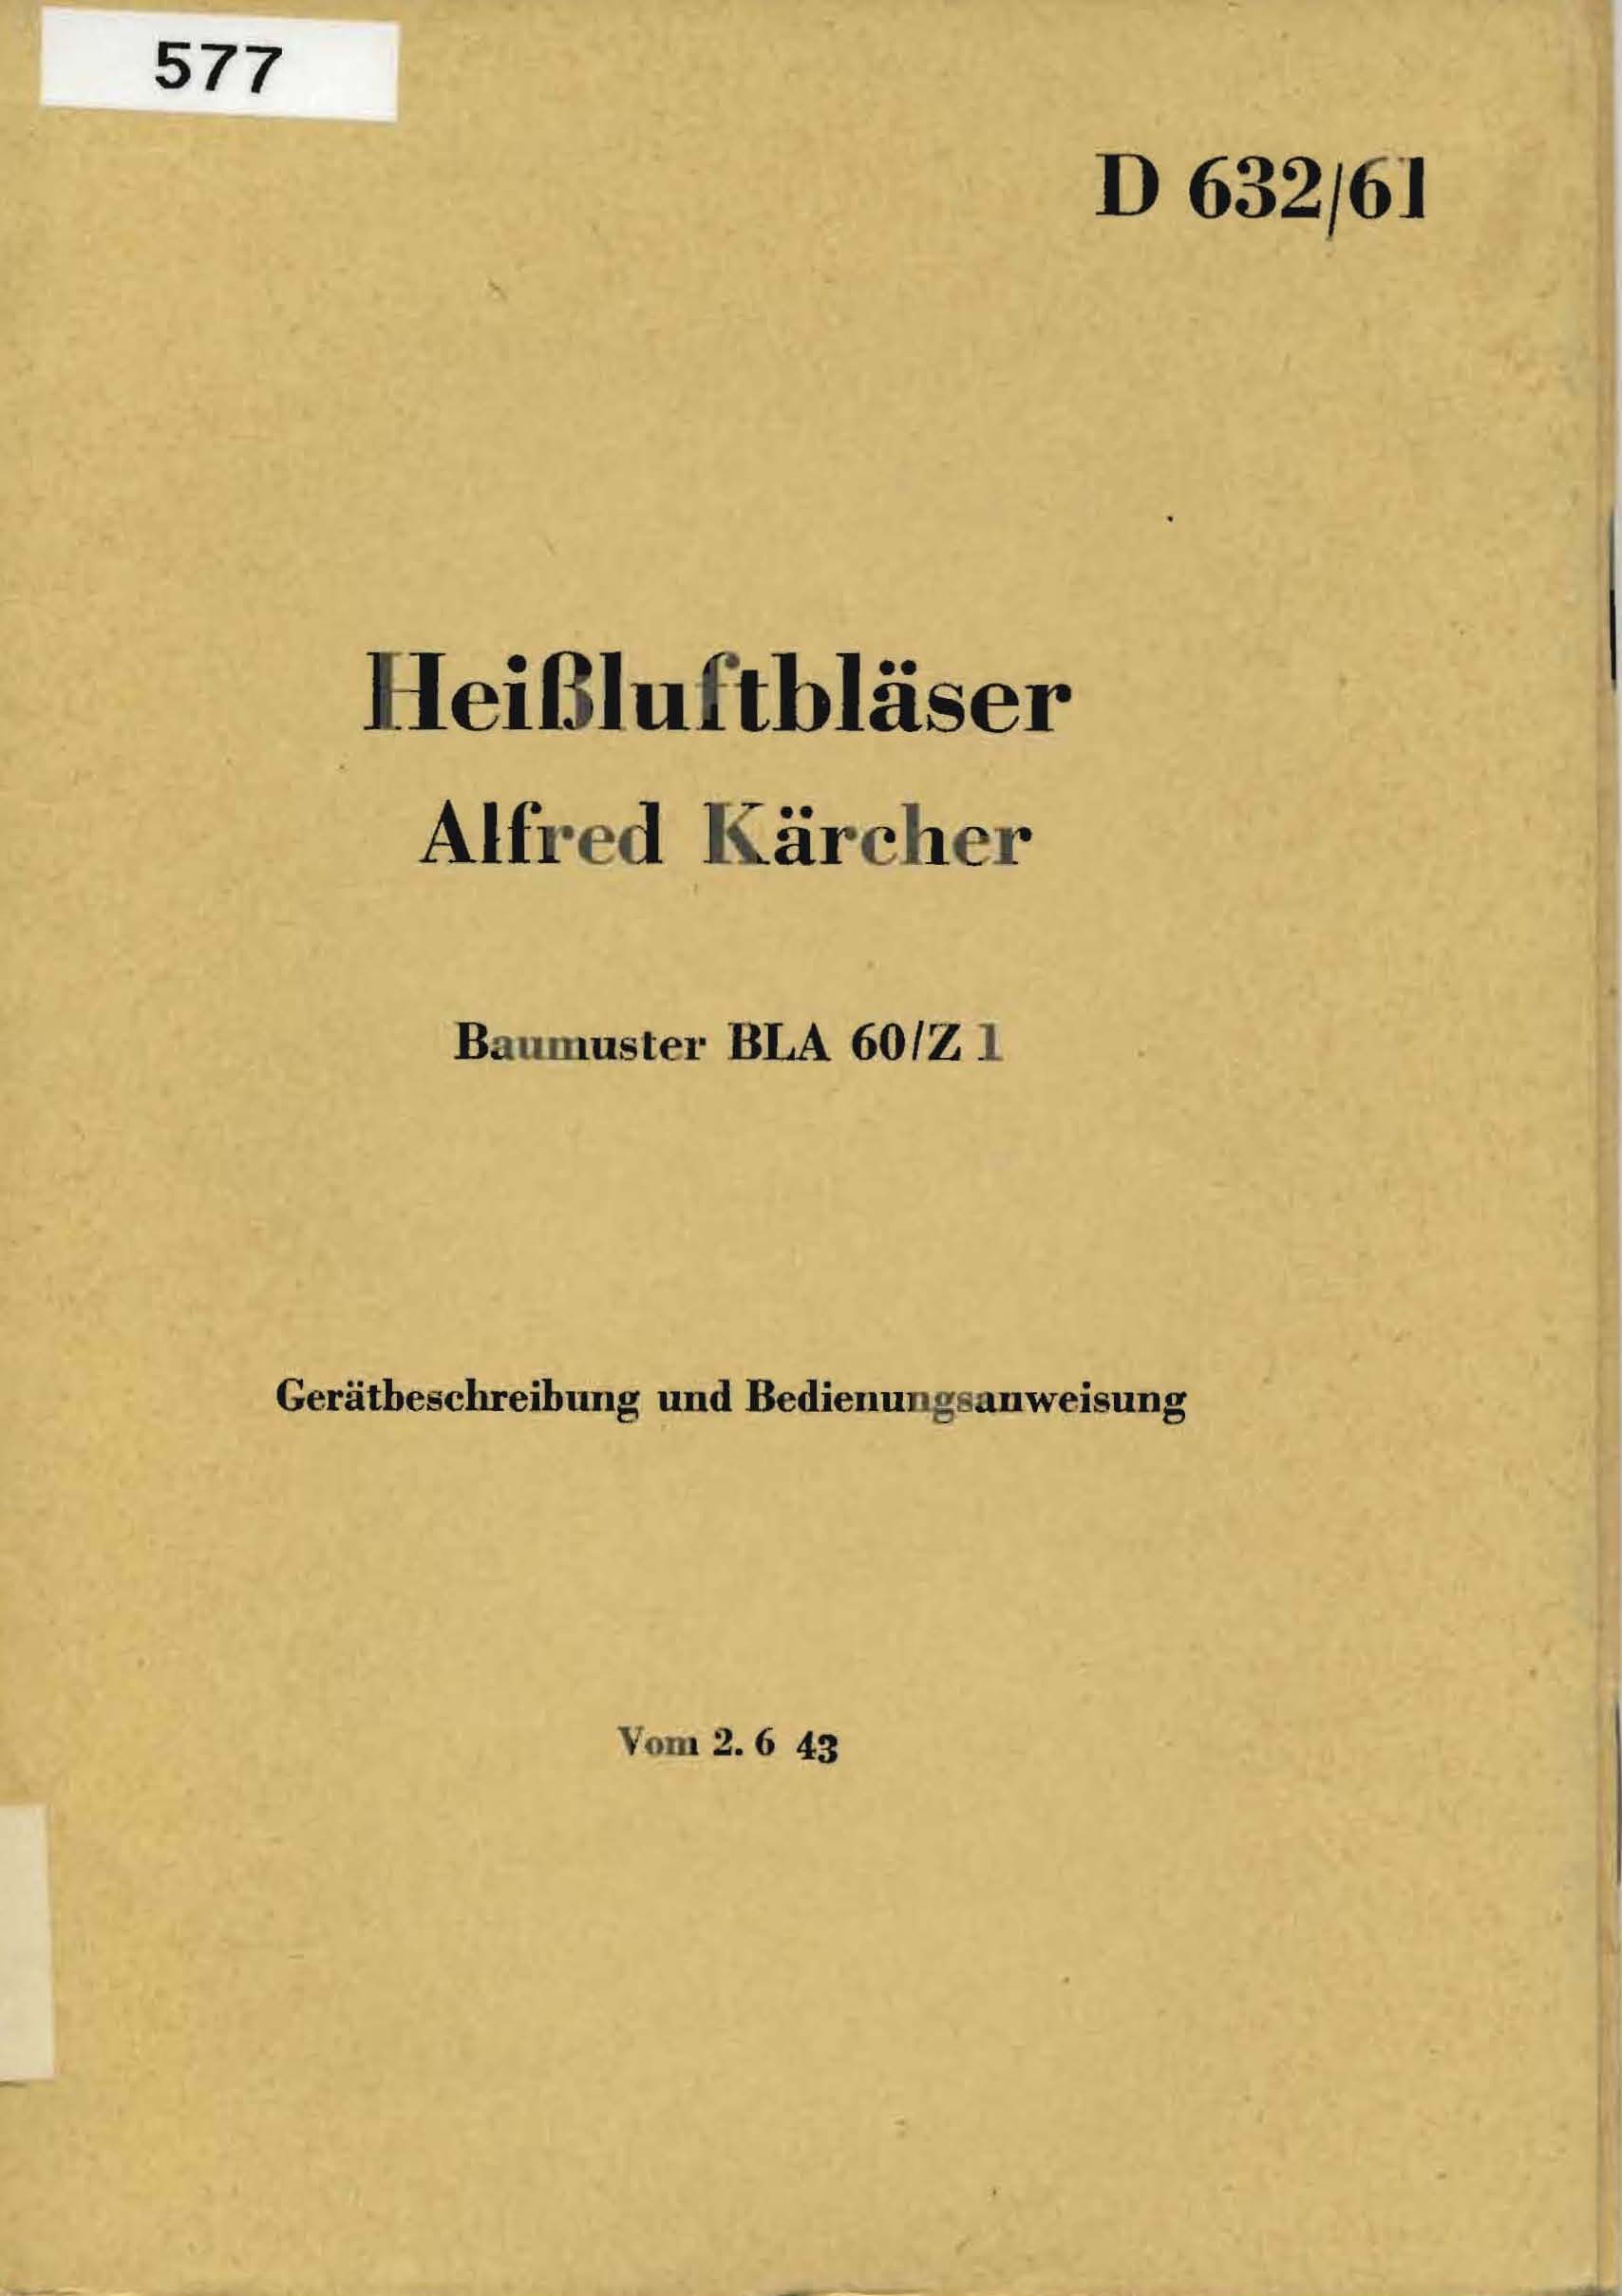 Heißluftbläser Alfred Kärcher, Baumuster BLA 60/Z 1